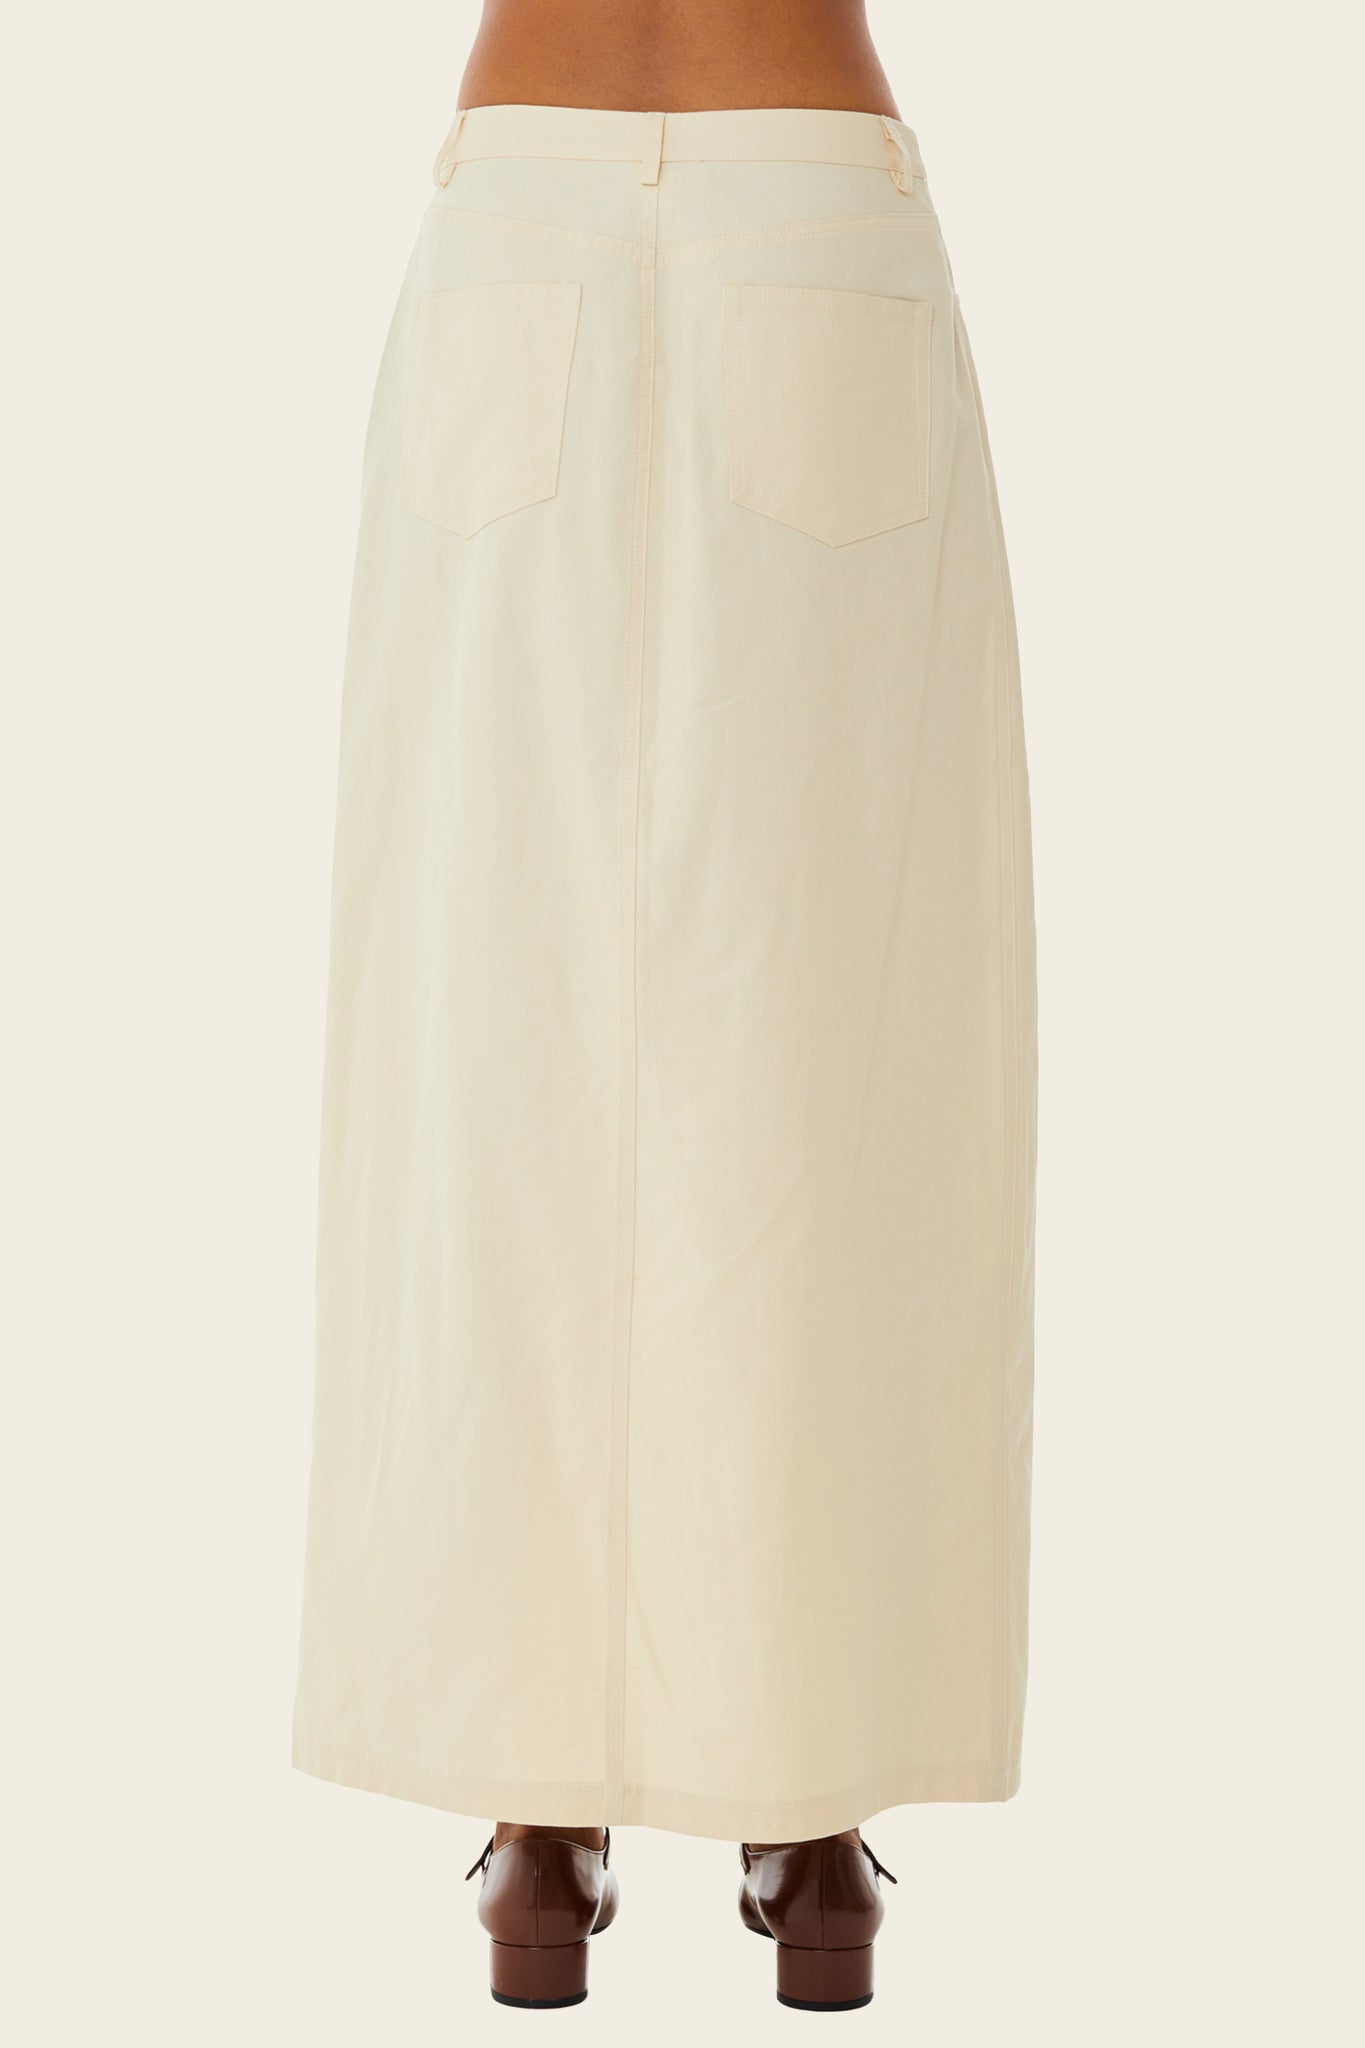 Khaki Midi Skirt